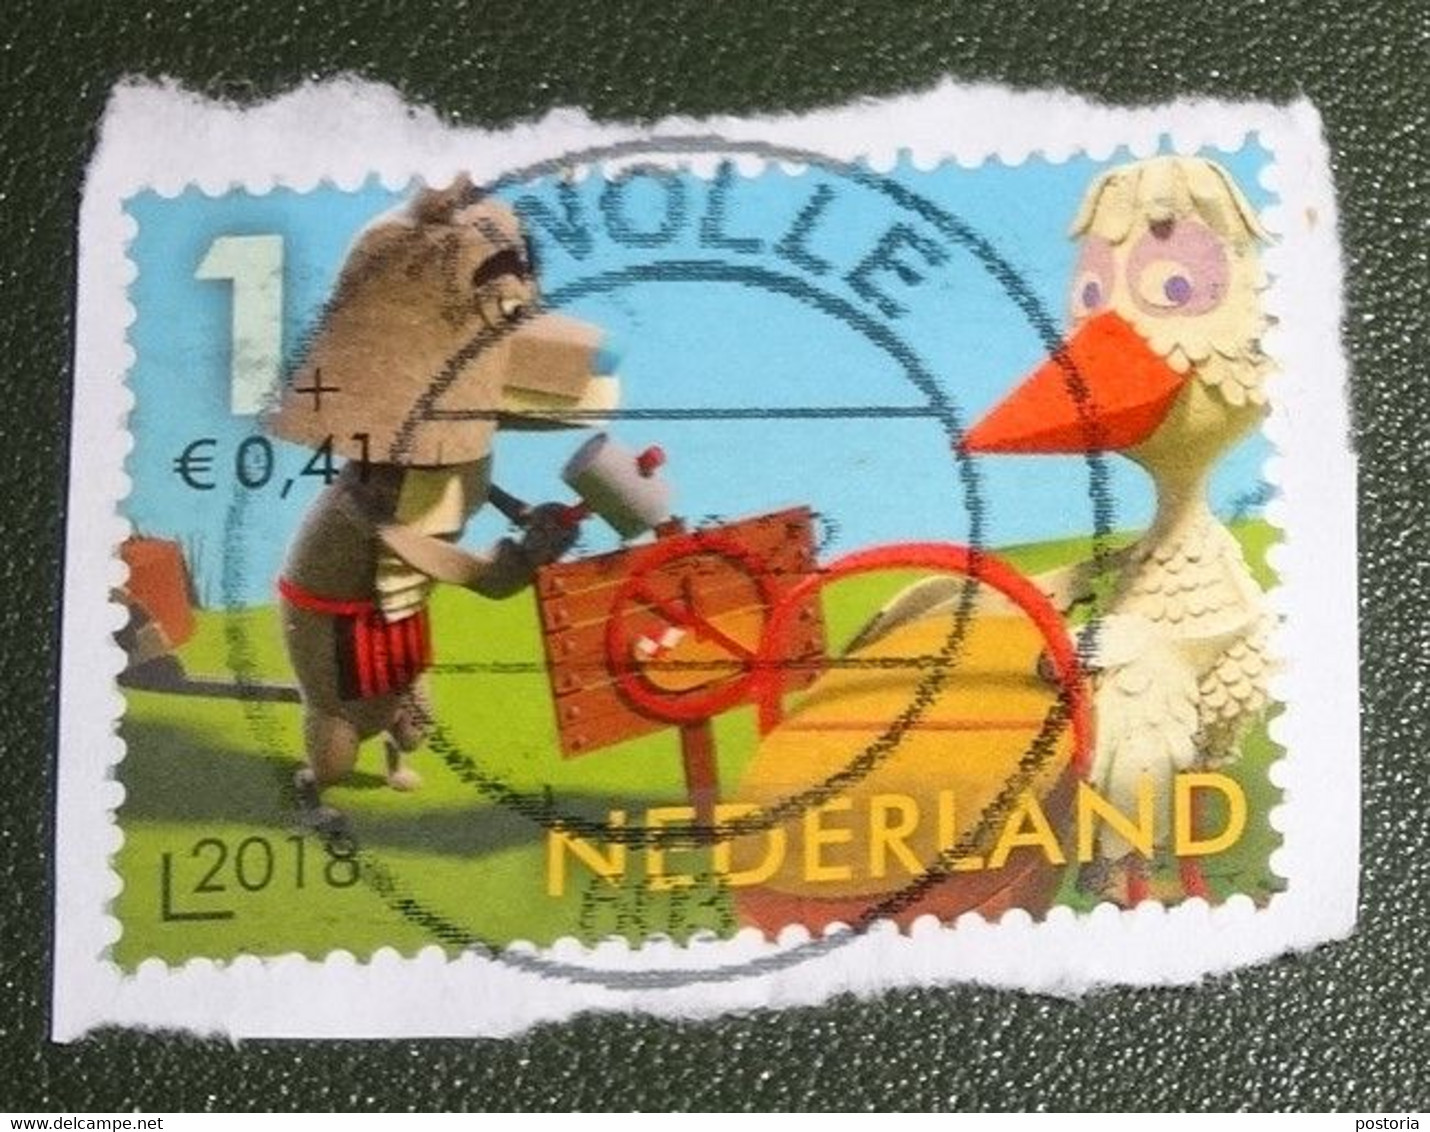 Nederland - NVPH - 3694c - 2018 - Gebruikt Onafgeweekt- Cancelled On Paper- Fabeltjeskrant - Bor De Wolf - Juf Ooievaar - Used Stamps